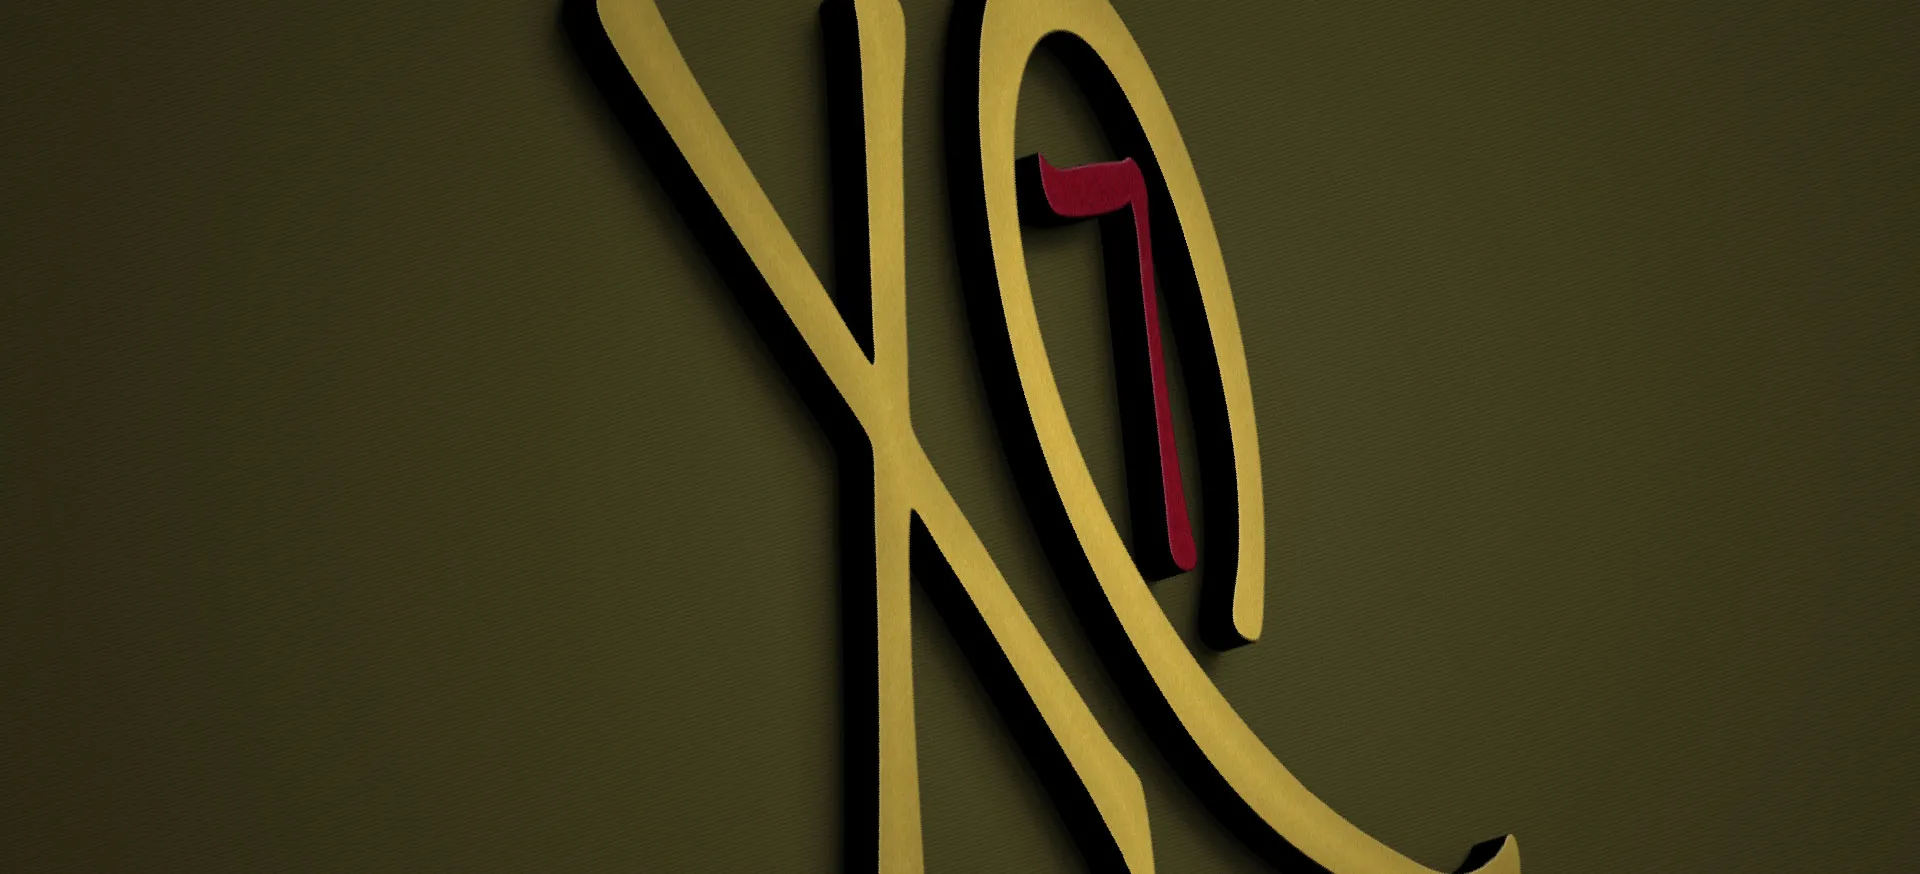 XQ7 Salford Quays Property signage design, branding nonfacture Birmingham Design Studio